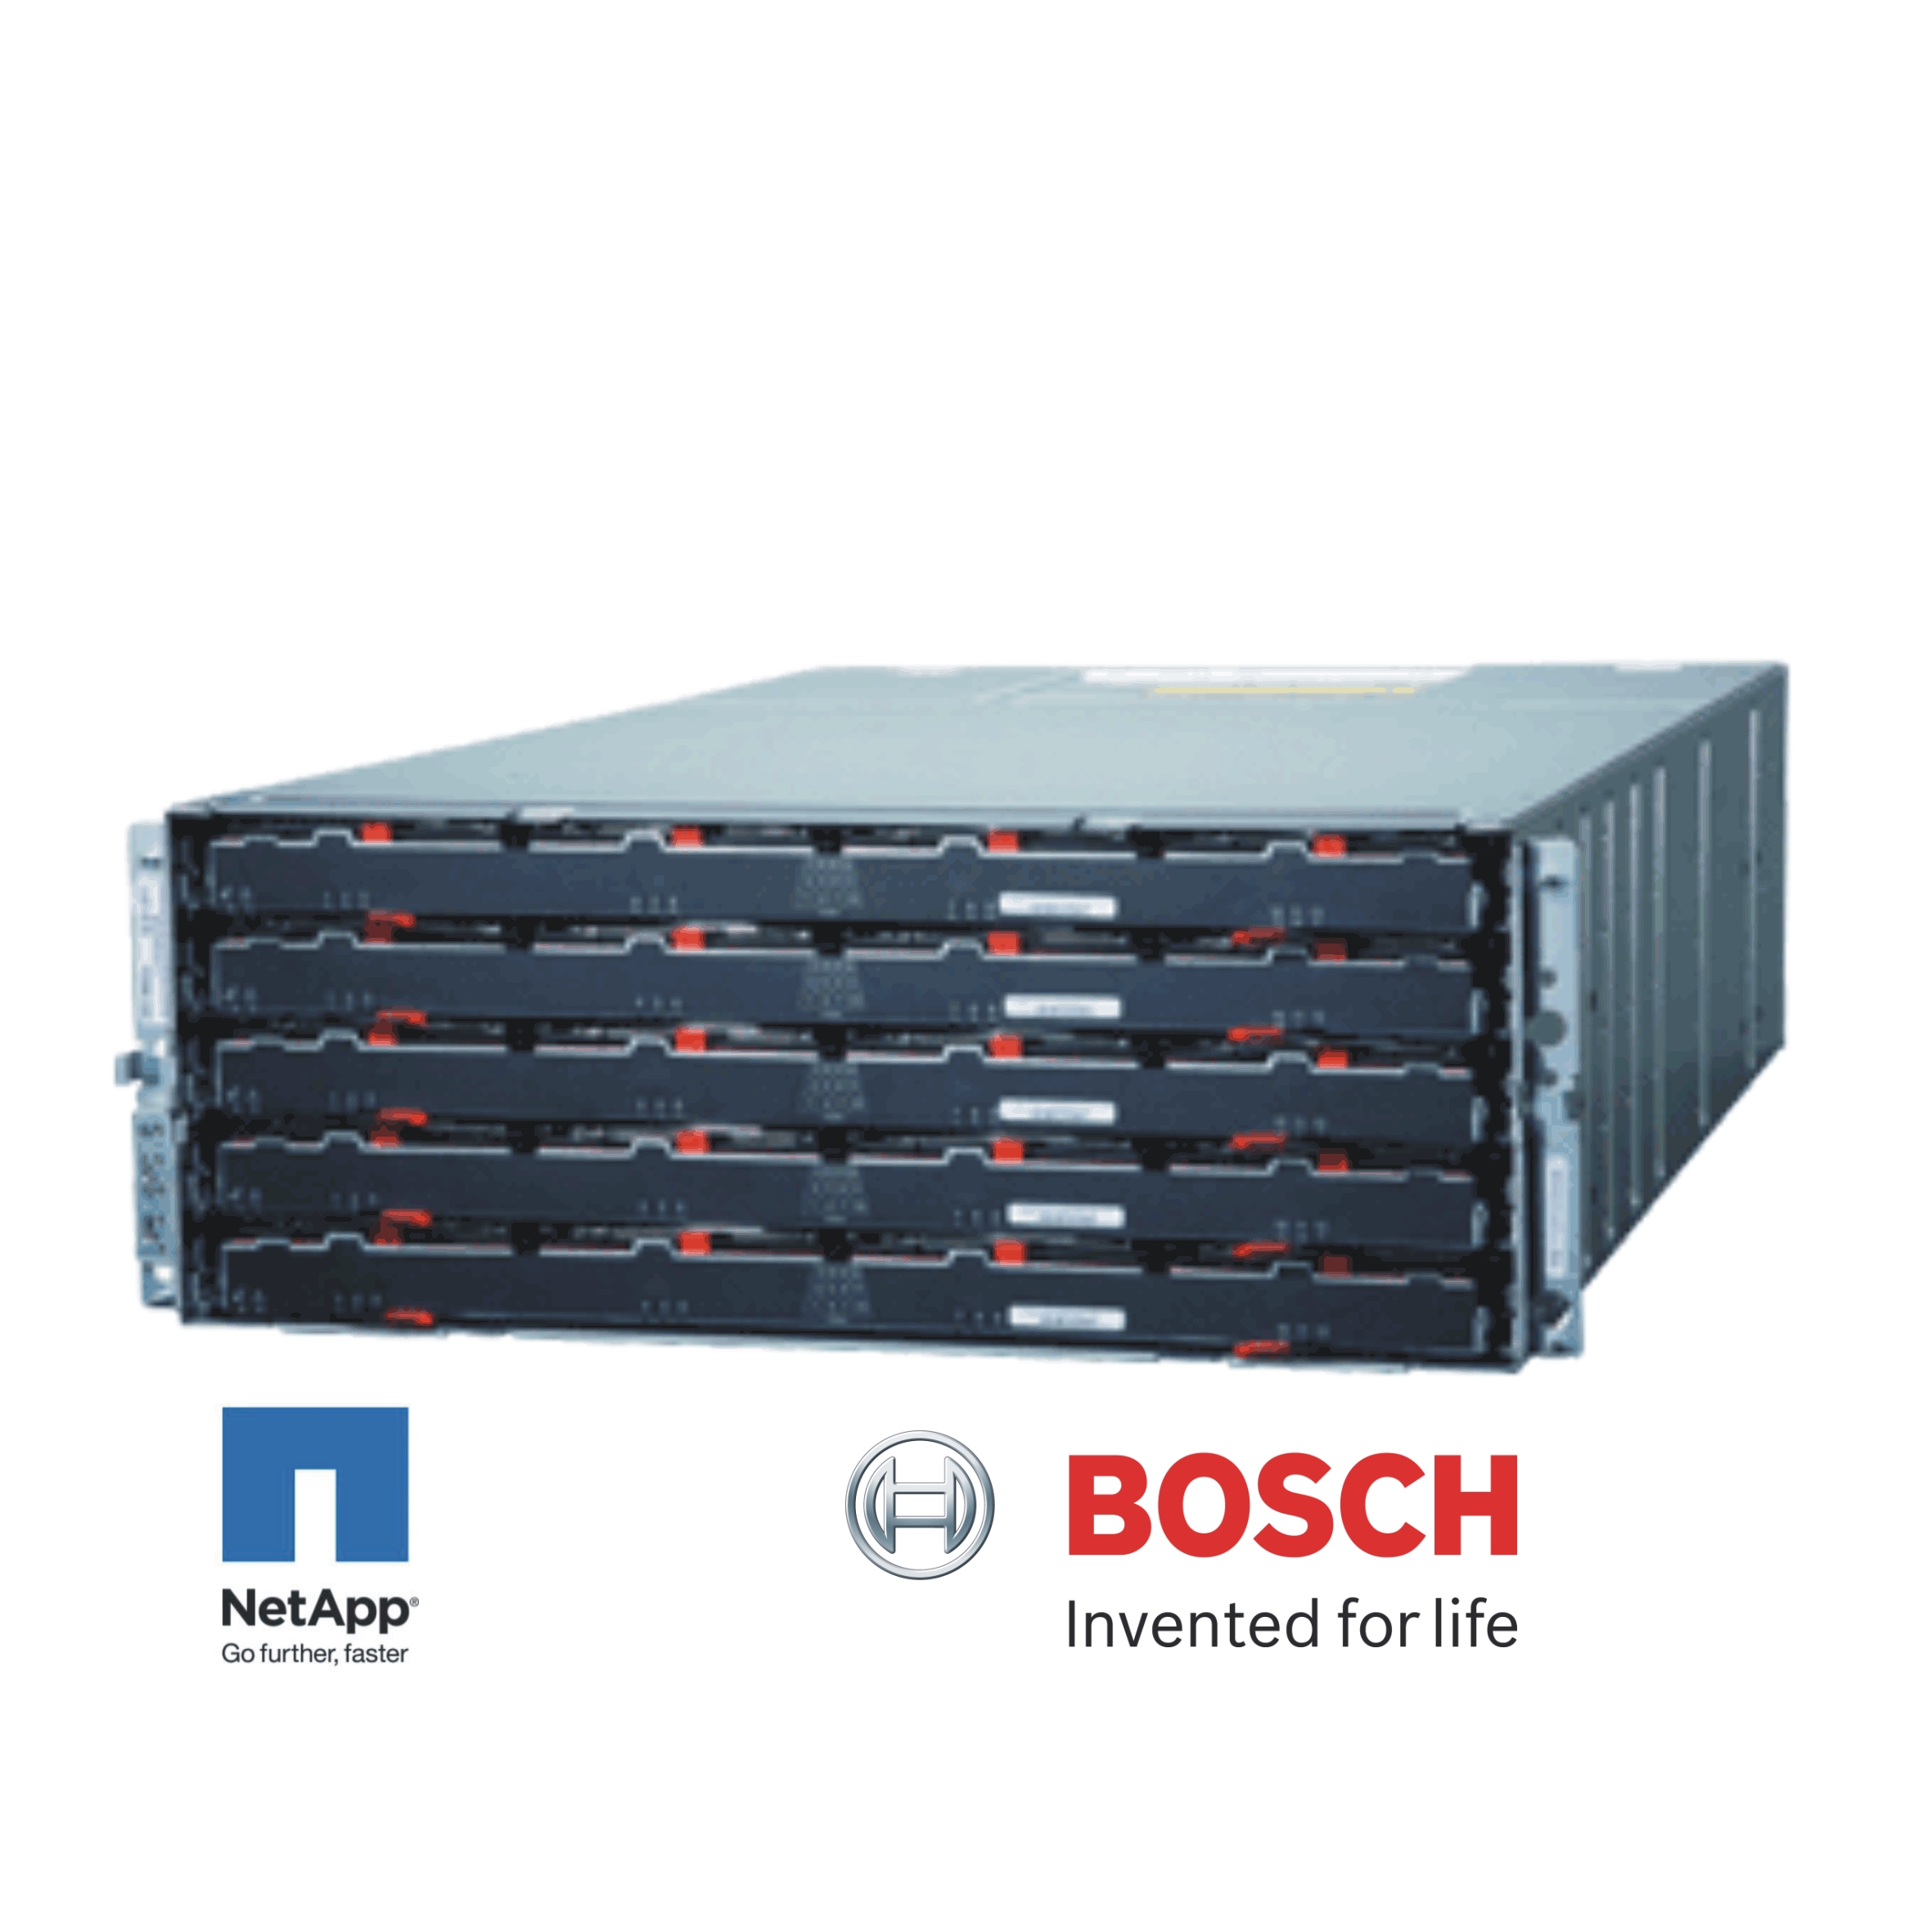 NetApp_Bosch_E-series_branded